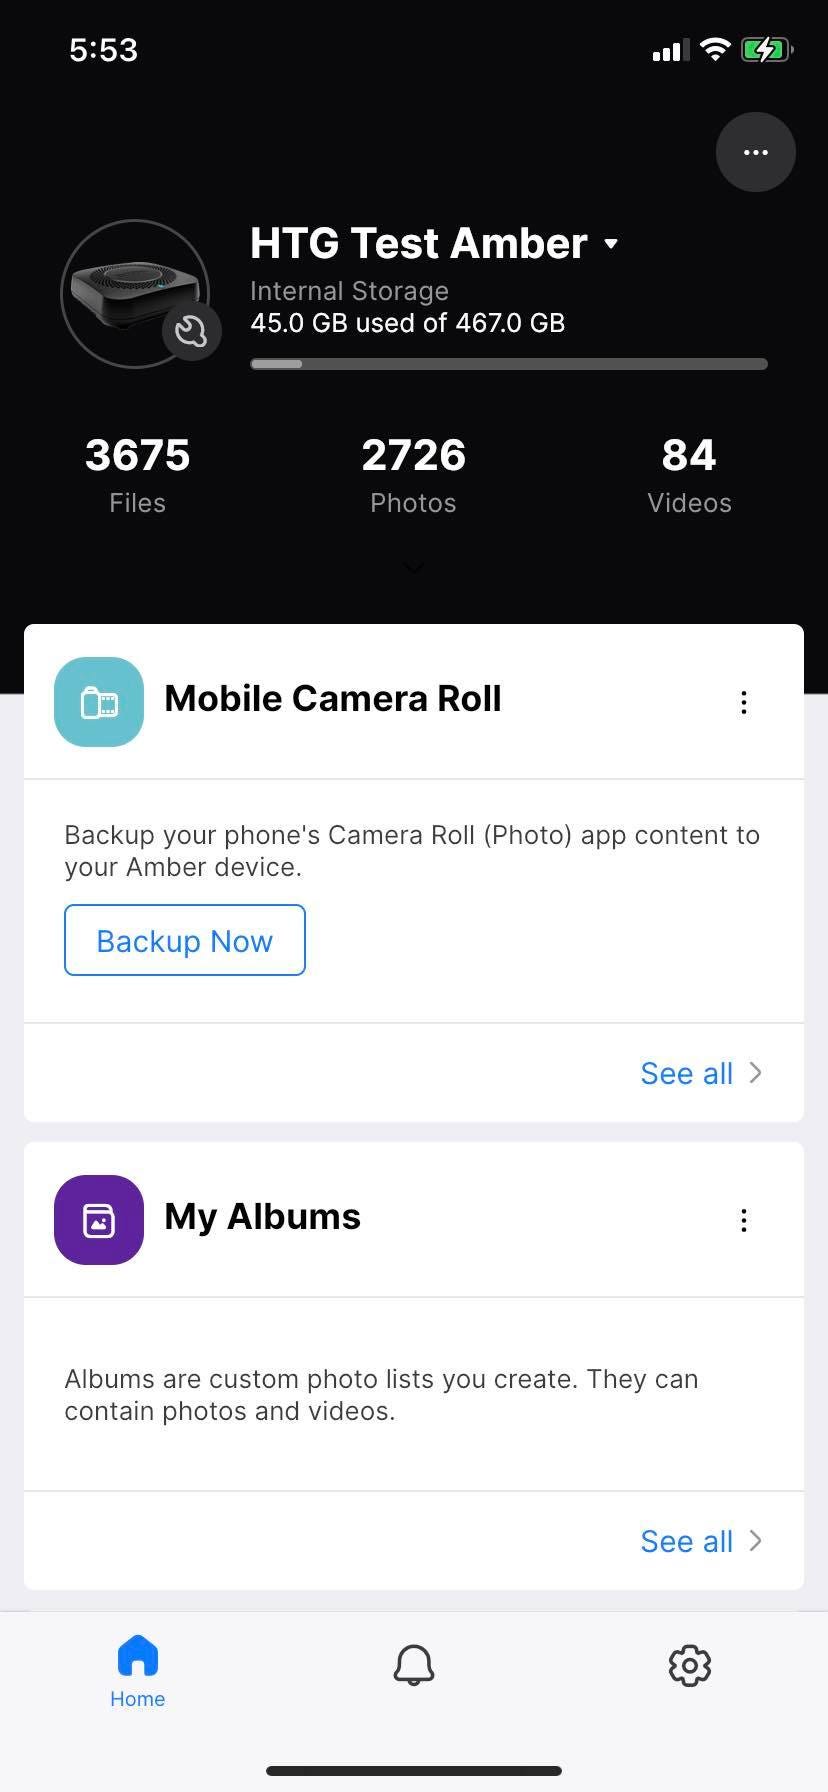 Amber iX mobile app main screen